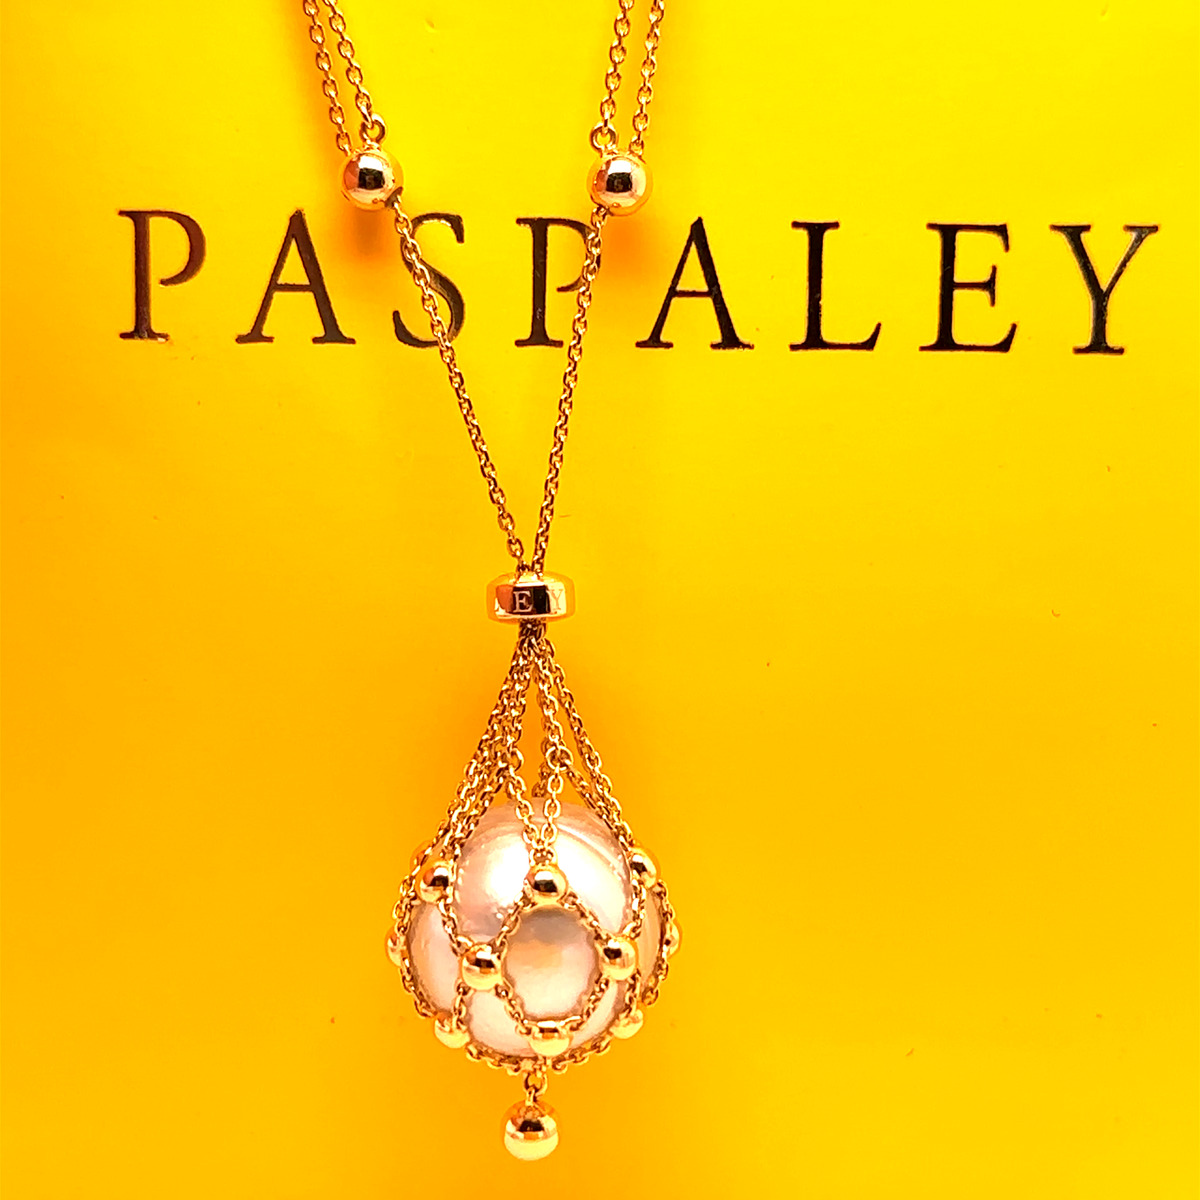 Paspaley Pearls | Jewelry trends, Luxury jewelry, Fashion jewelry